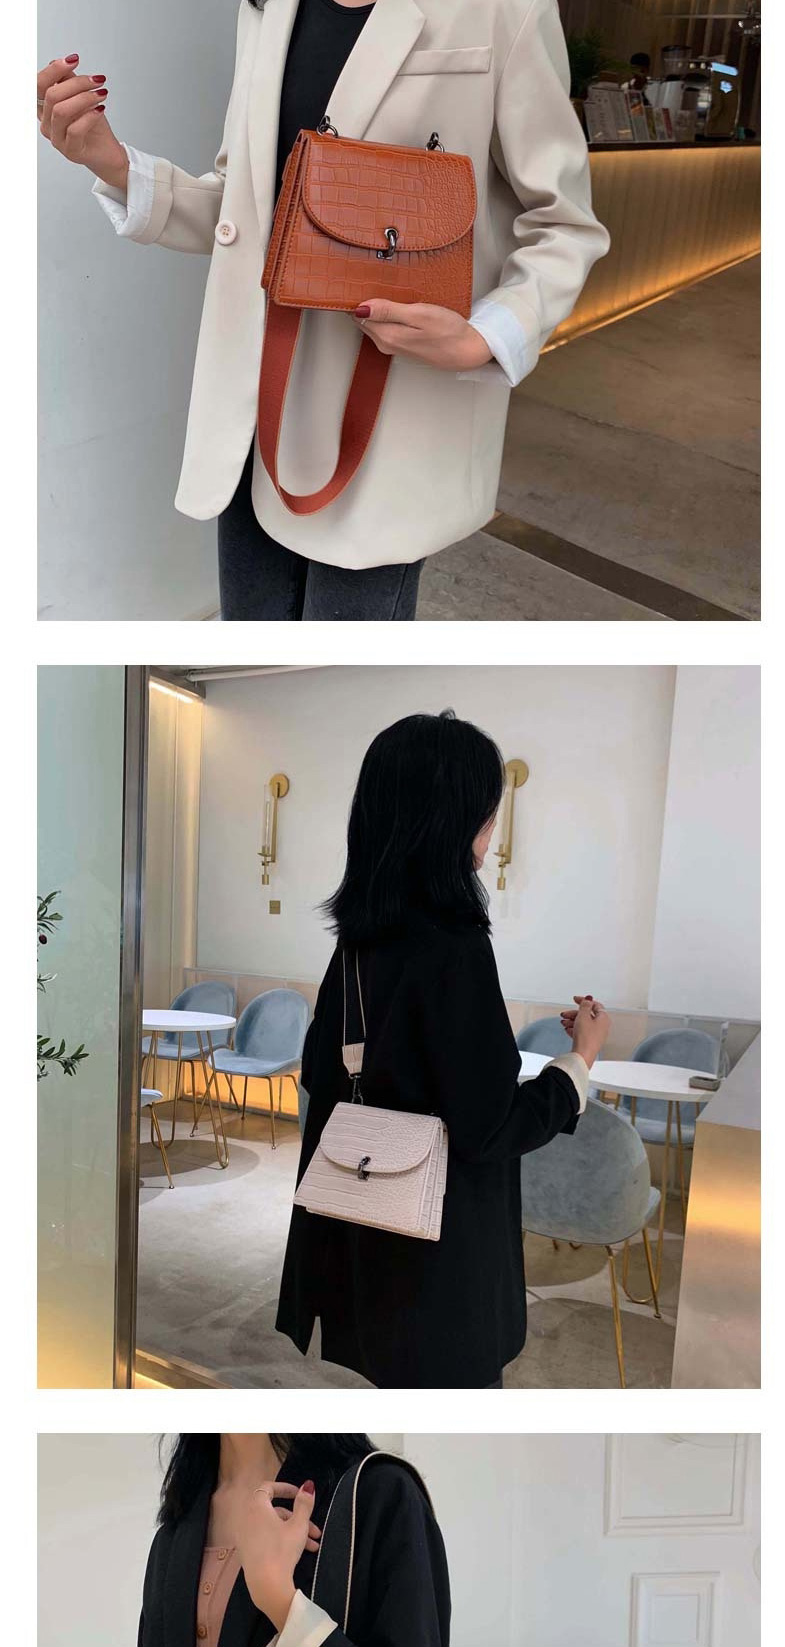 Fashion Creamy-white Broadband Crocodile Shoulder Shoulder Bag,Shoulder bags